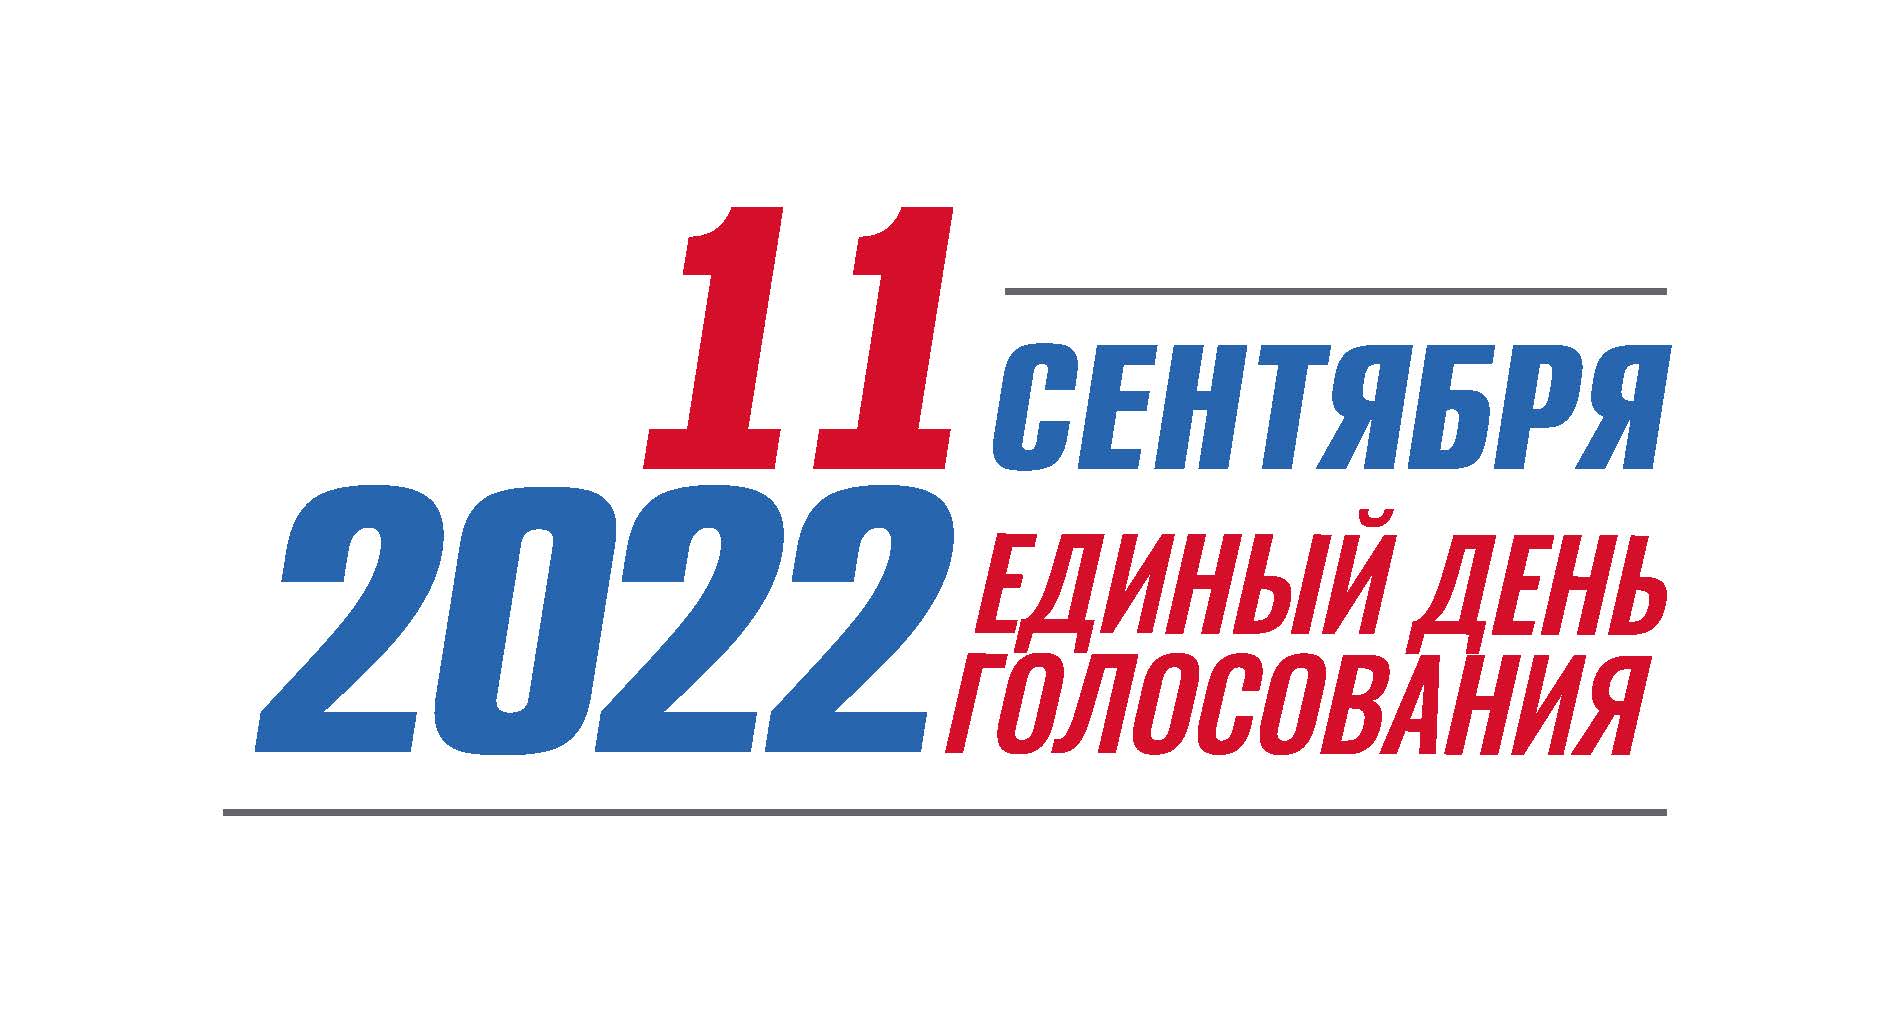 Выборы сентябрь 24. Единый день голосования в 2022 году. Единый день голосования 11 сентября 2022 года. Единый день голосования 2022 логотип. ЕДГ 2022.